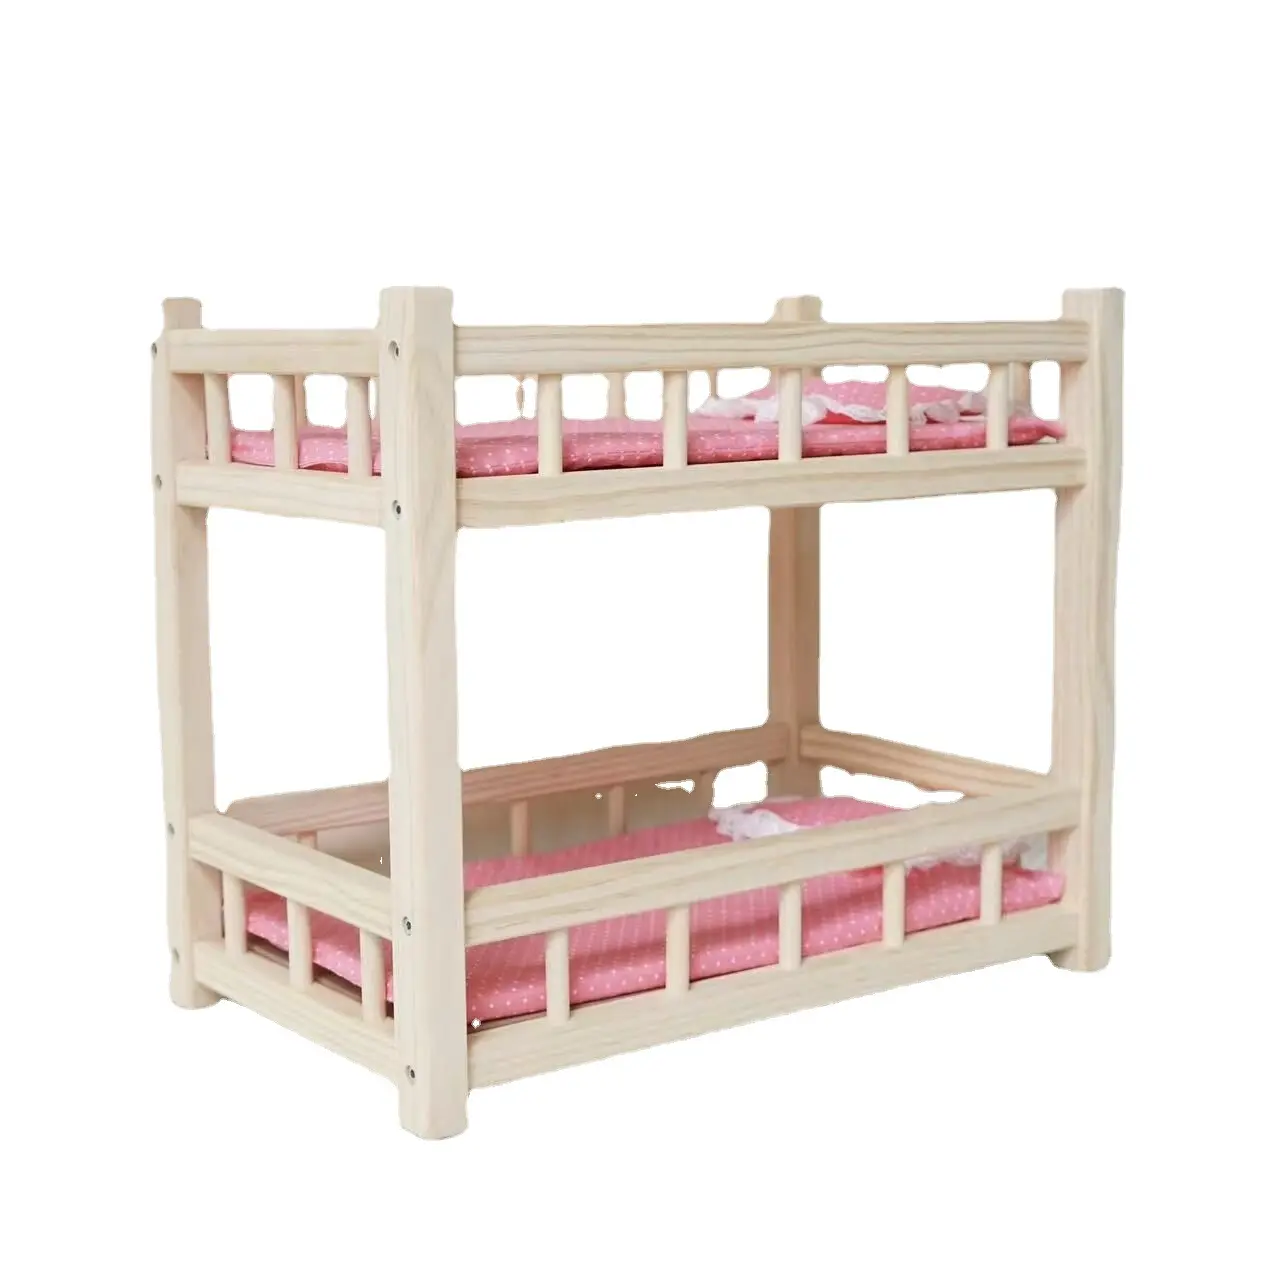 Sıcak satış mobilya oyuncak bebek yatağı prenses yatak rol oynayan ahşap bebek Shaker oyuncak seti kızlar için ev oyunu